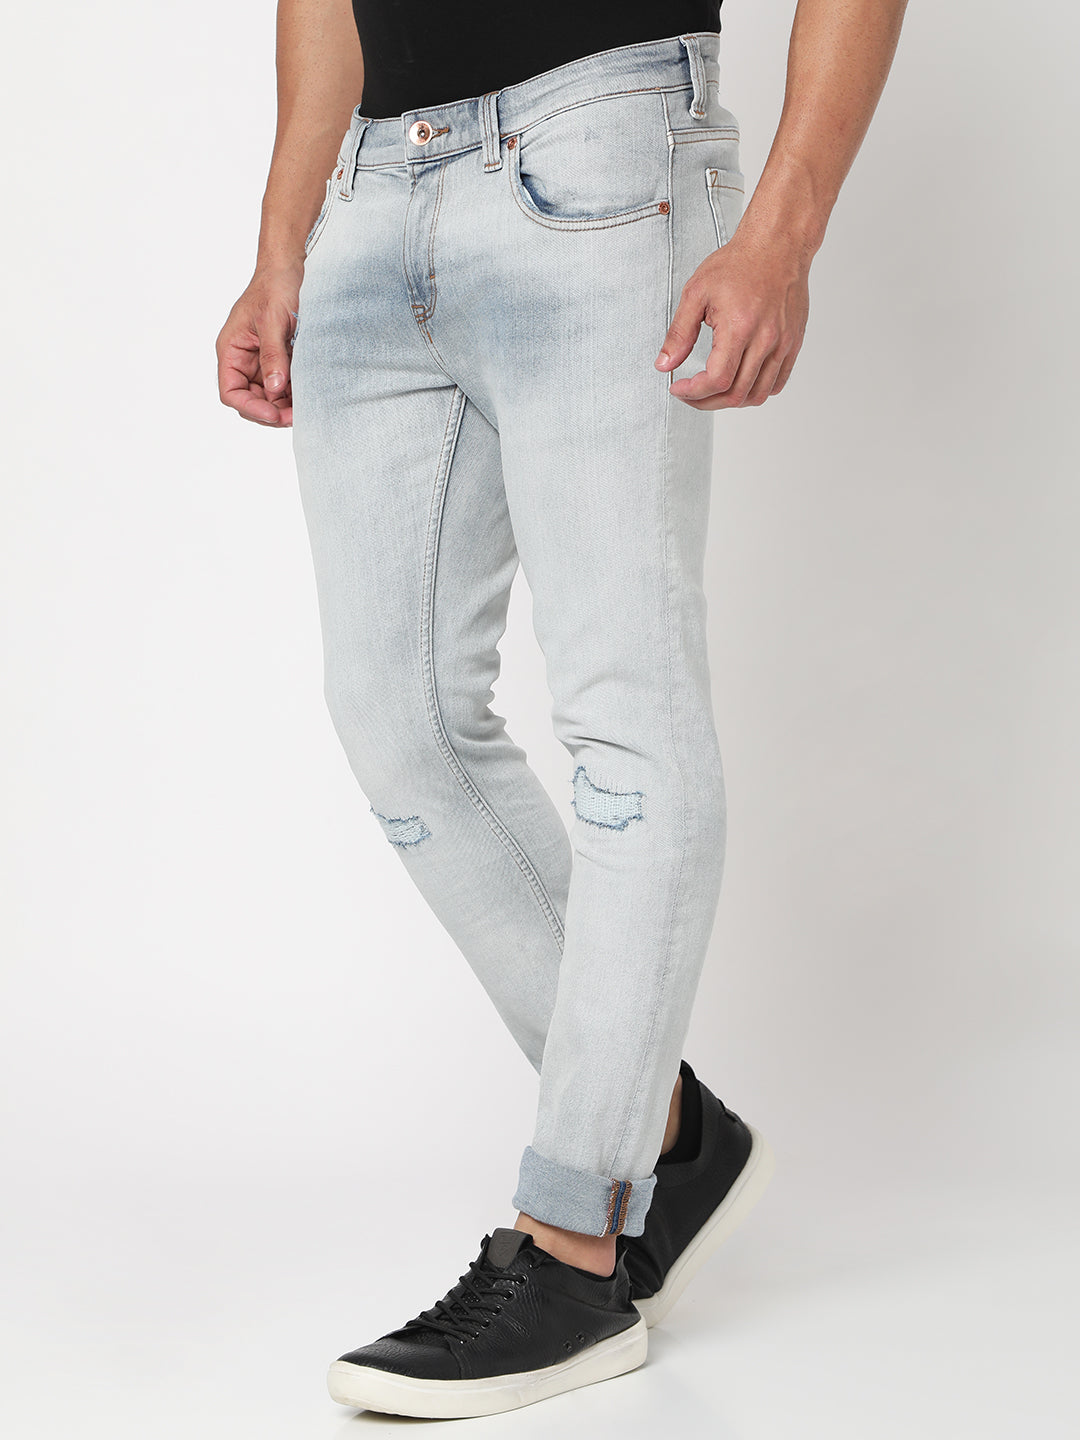 Spykar Light Blue Cotton Slim Fit Narrow Length Jeans For Men (Skinny) -  mltd02bb138lightblue